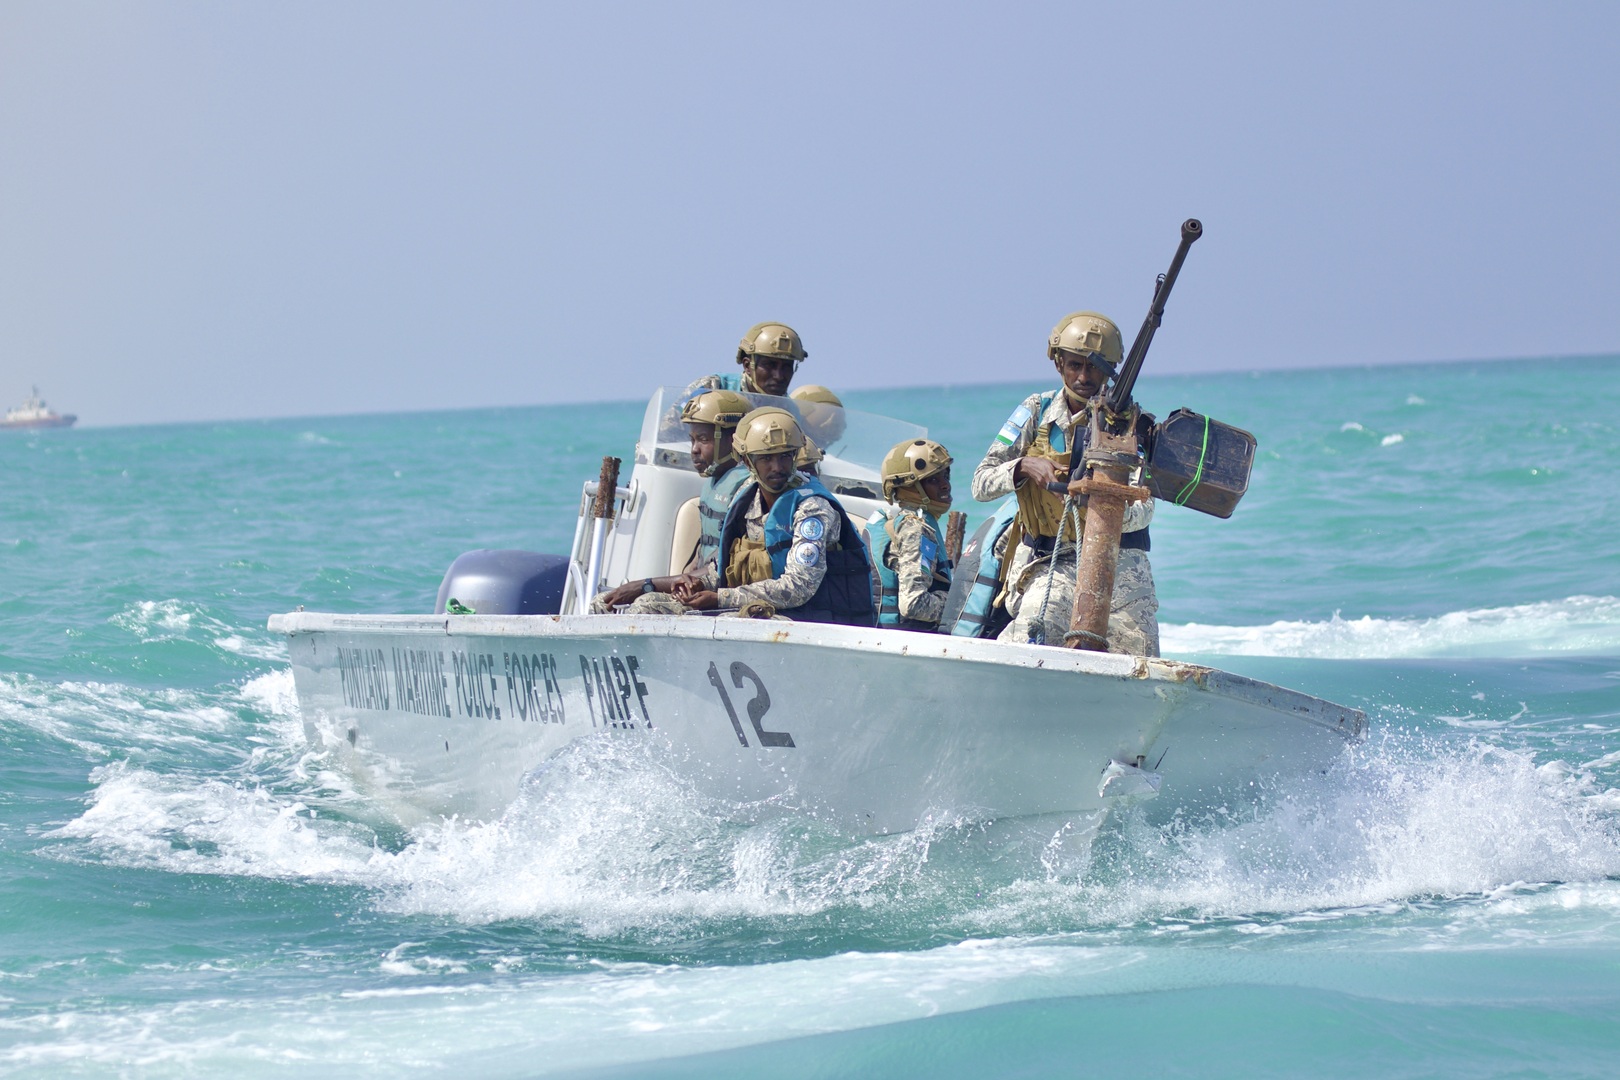 وكالة مراقبة بحرية بريطانية: خطف سفينة اخرى قرب الصومال